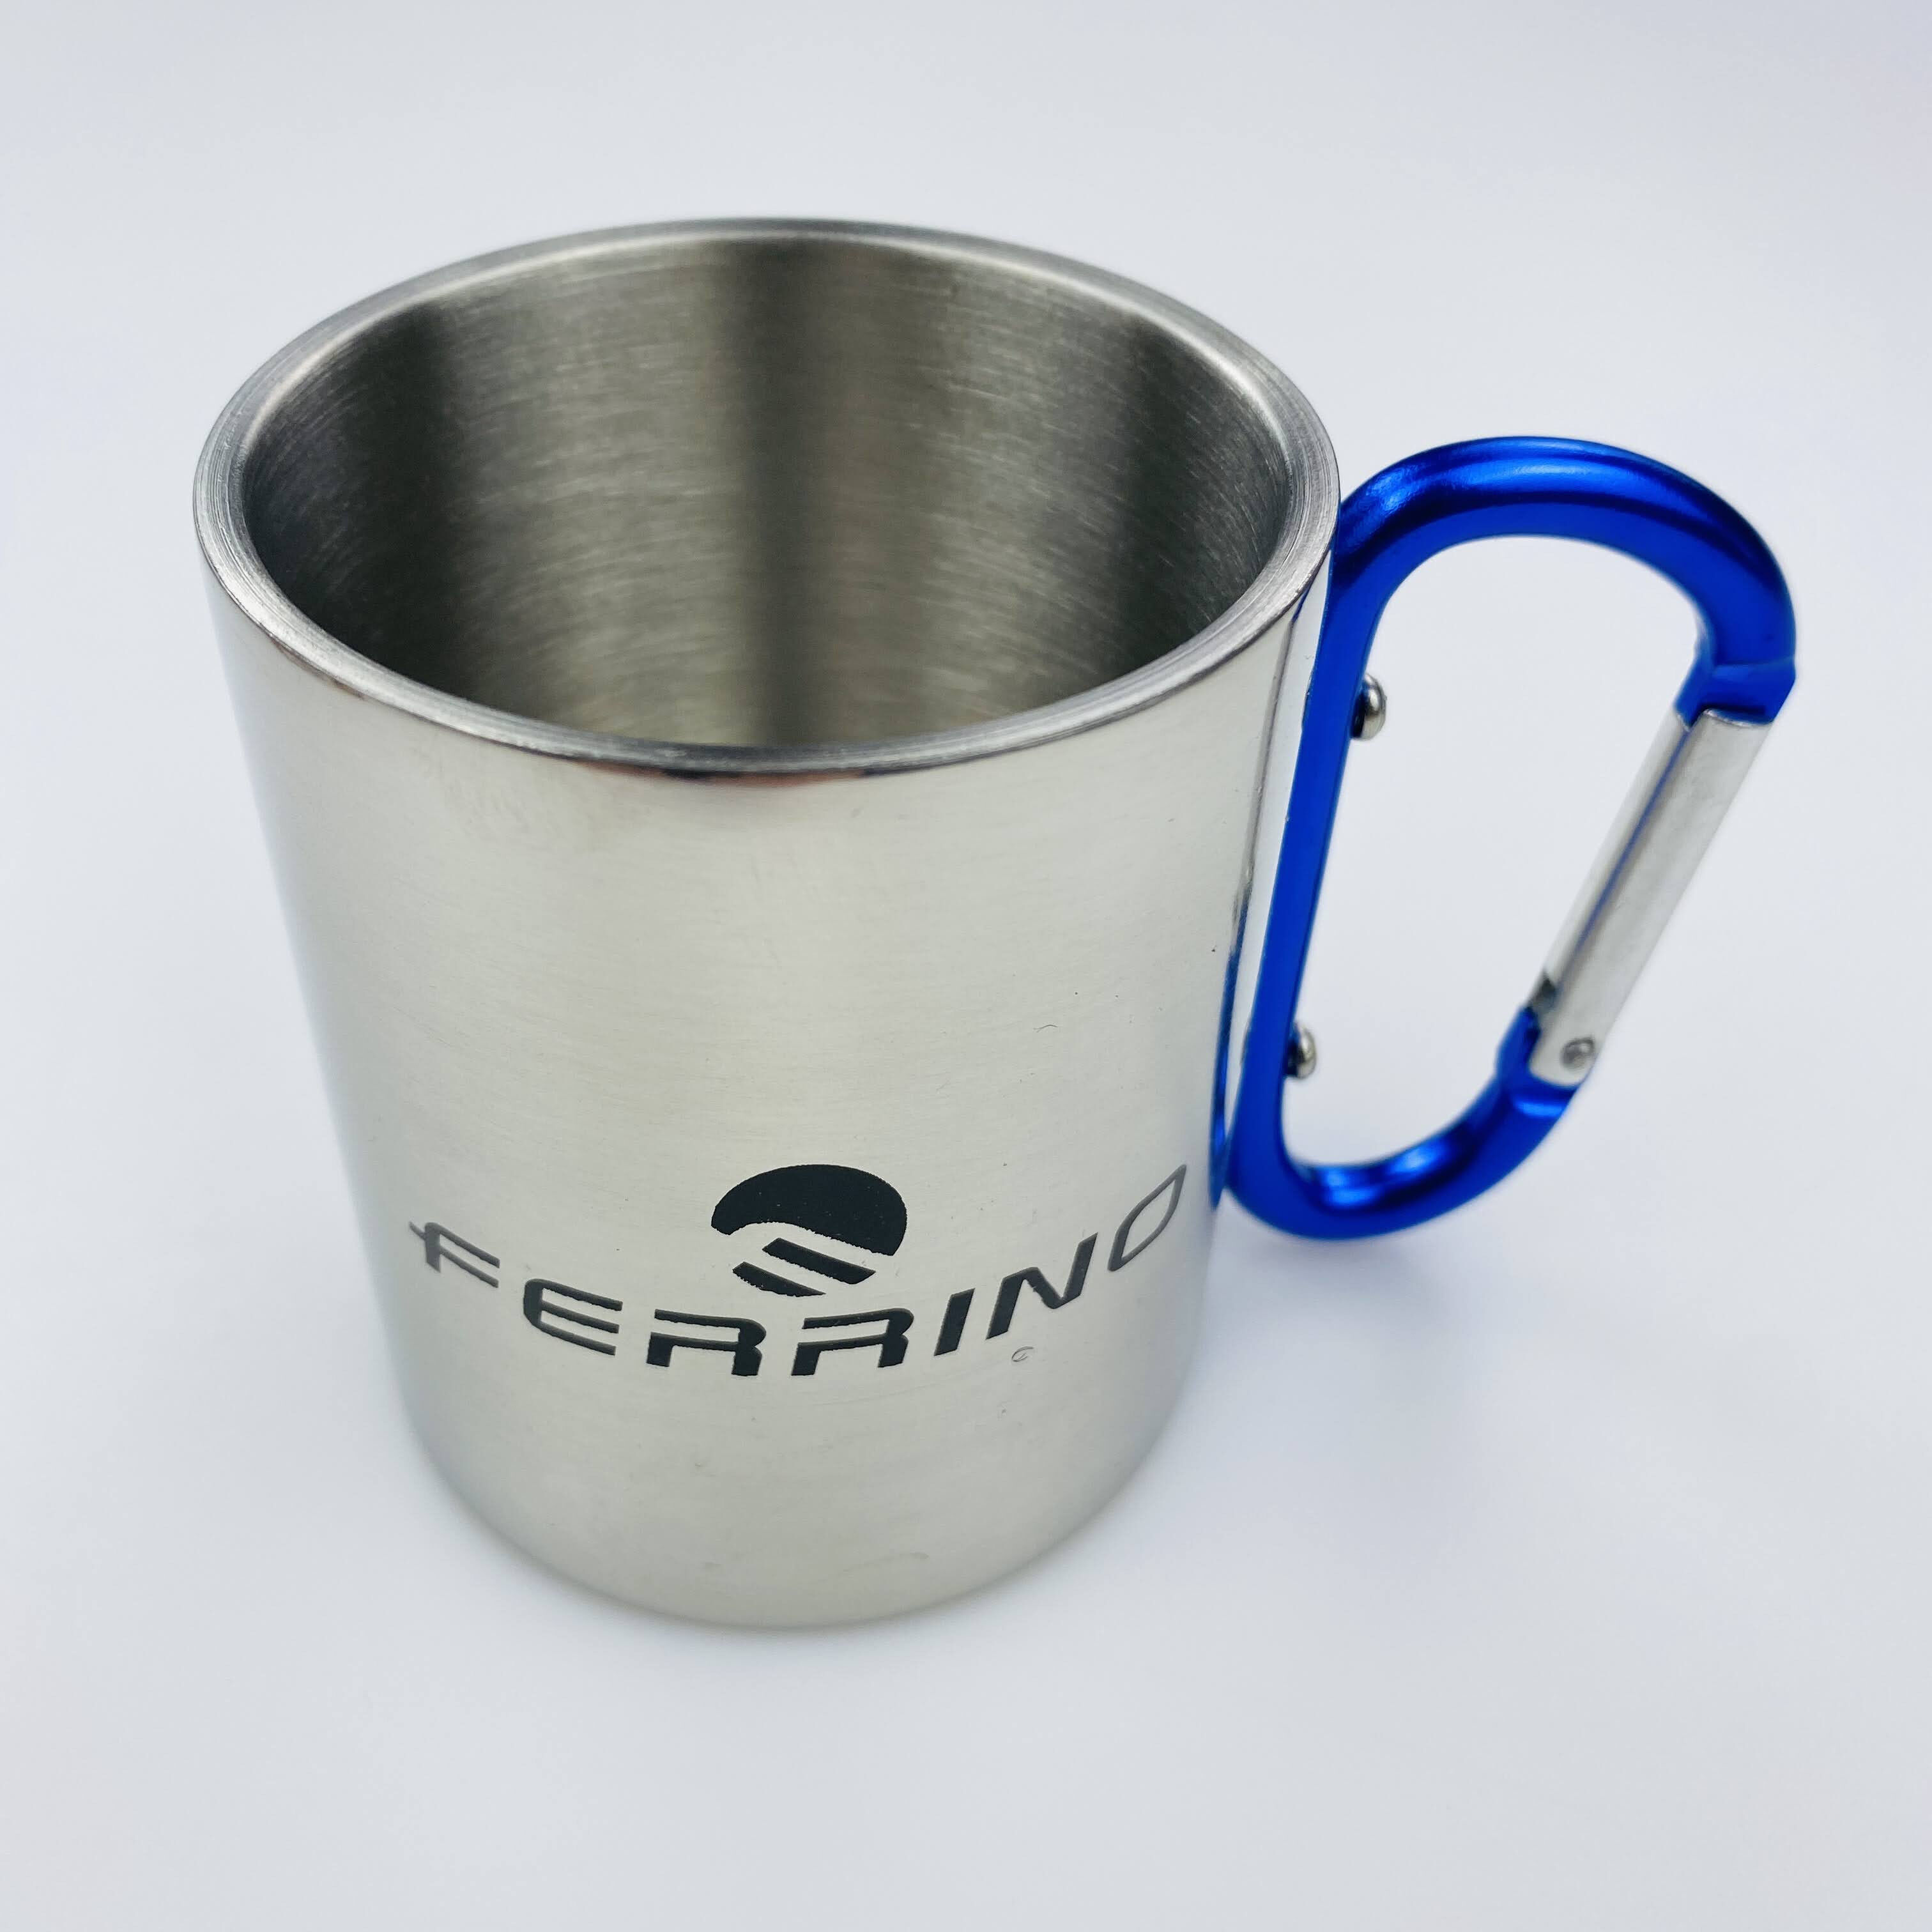 Ferrino Inox Cup - With Carabiner - Segunda mano Vaso plegable - Gris - Talla única | Hardloop